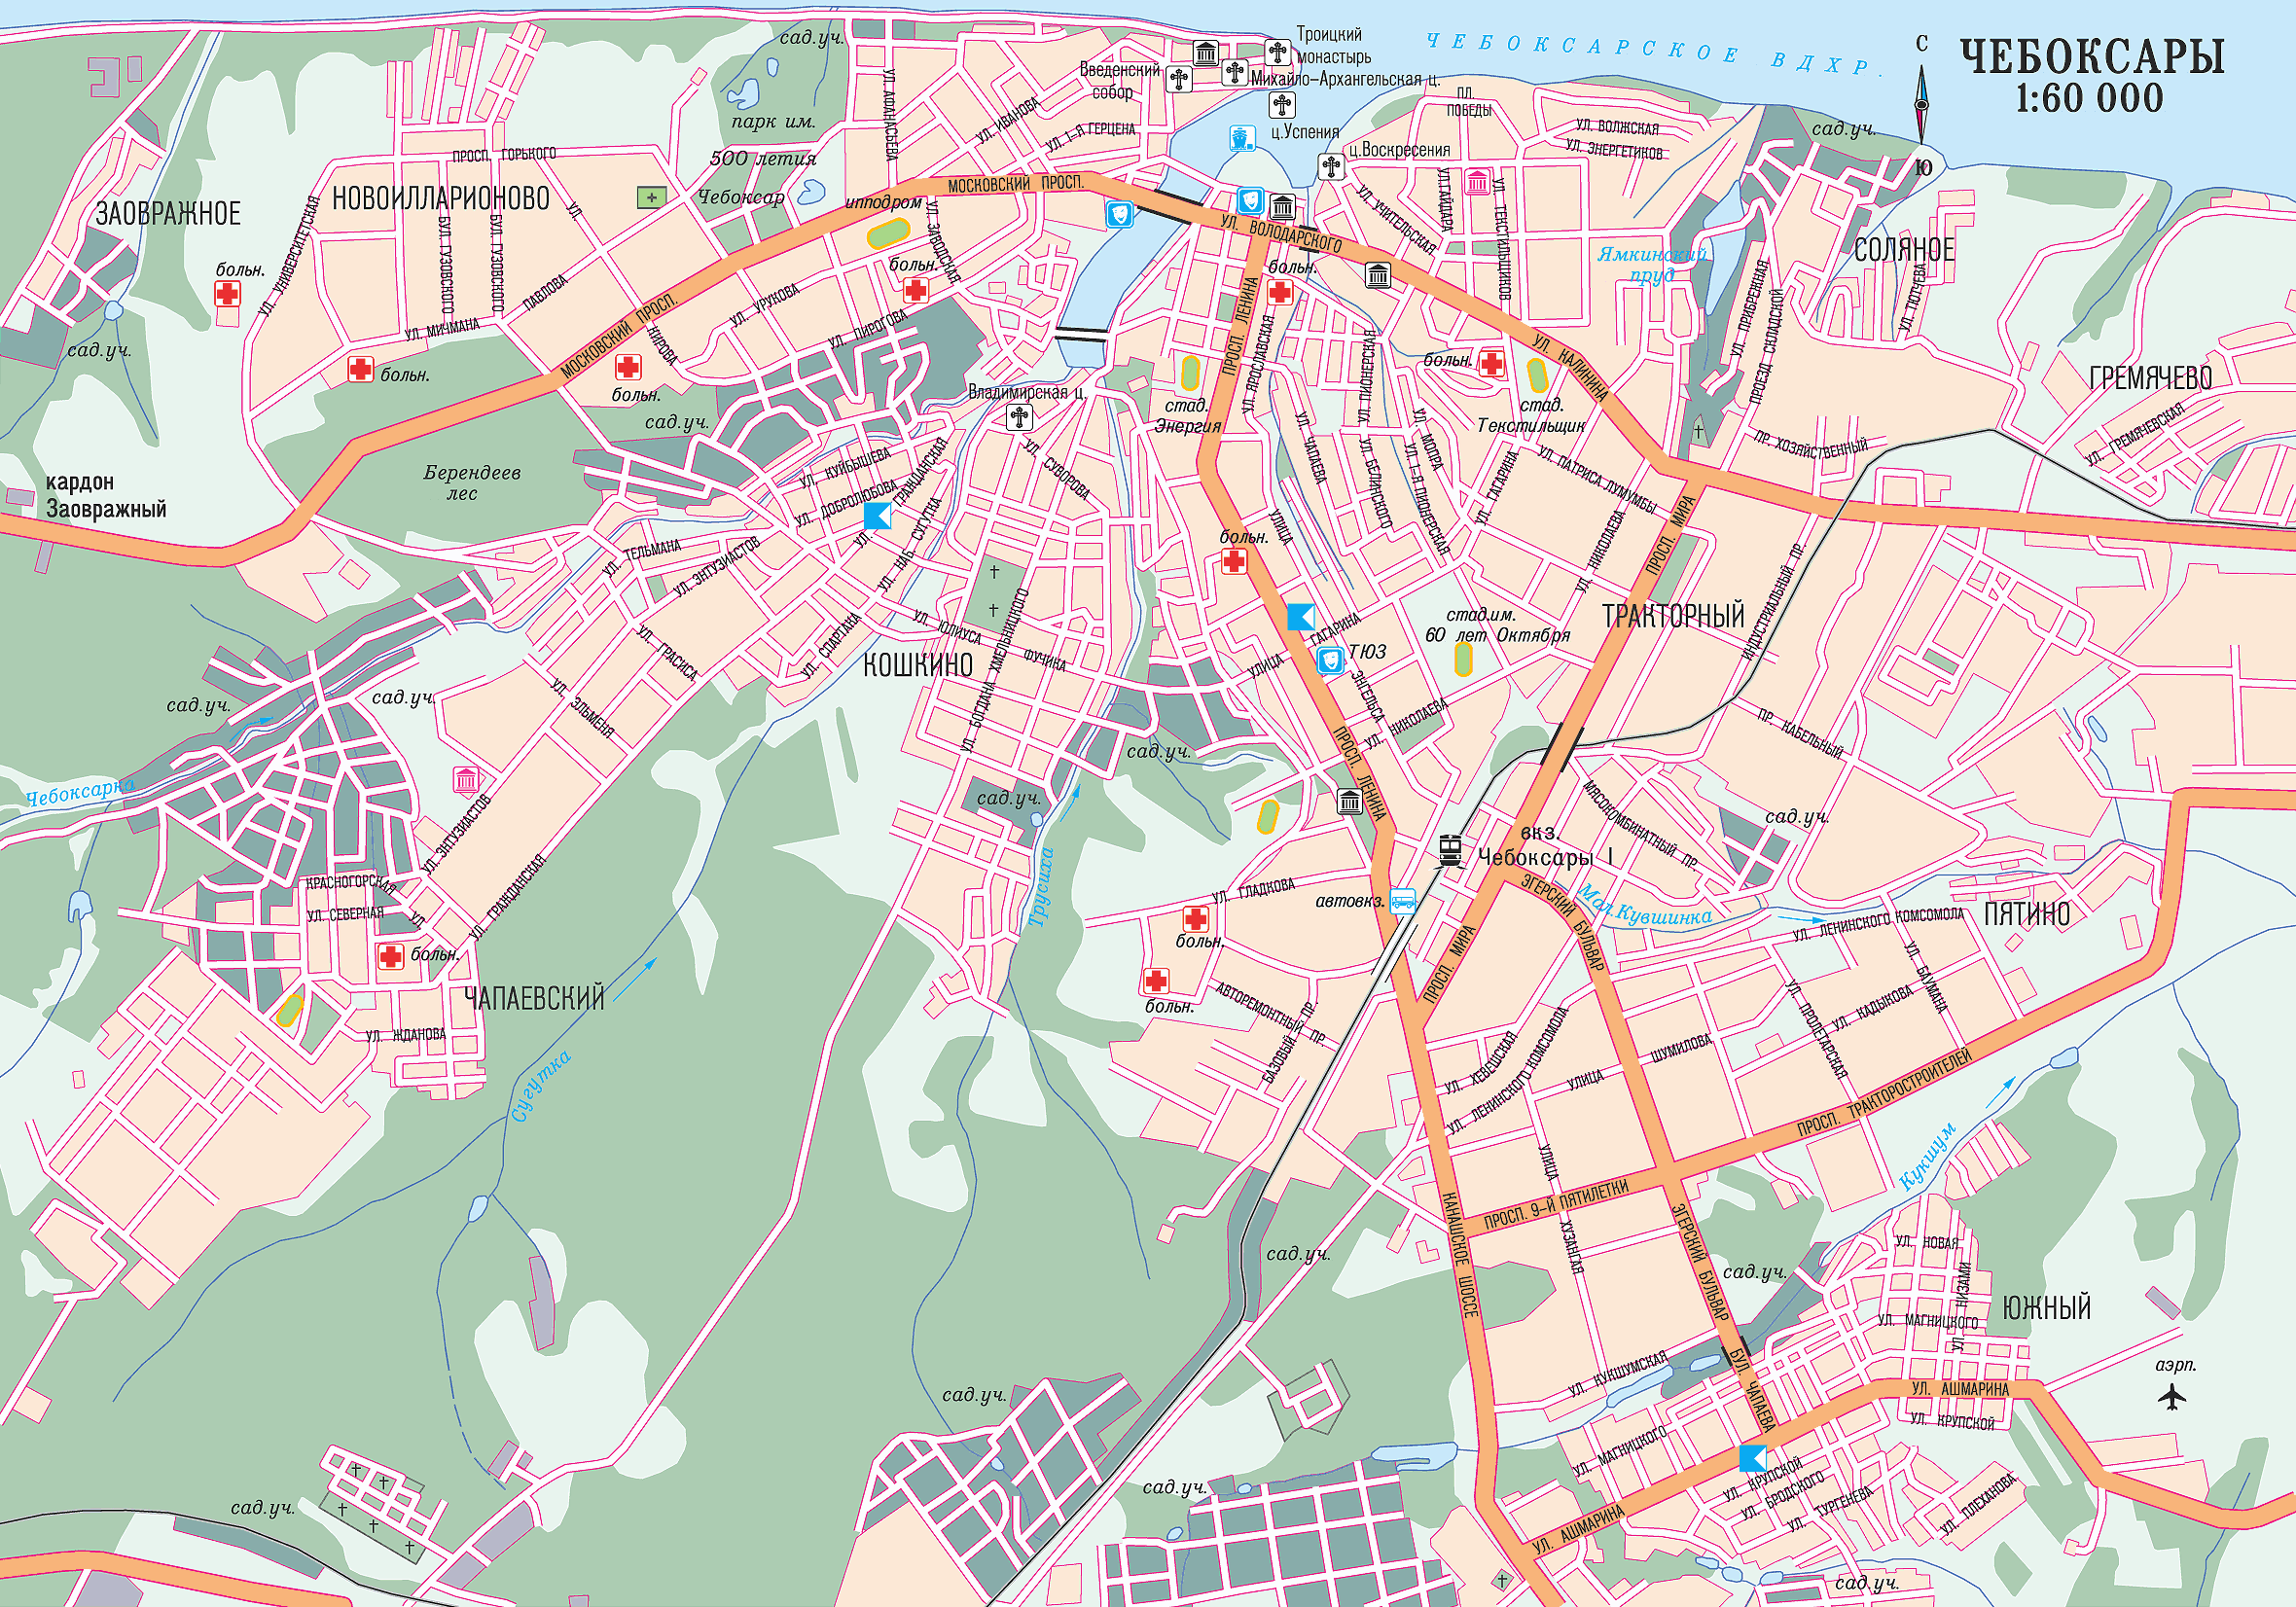 Cheboksary center map